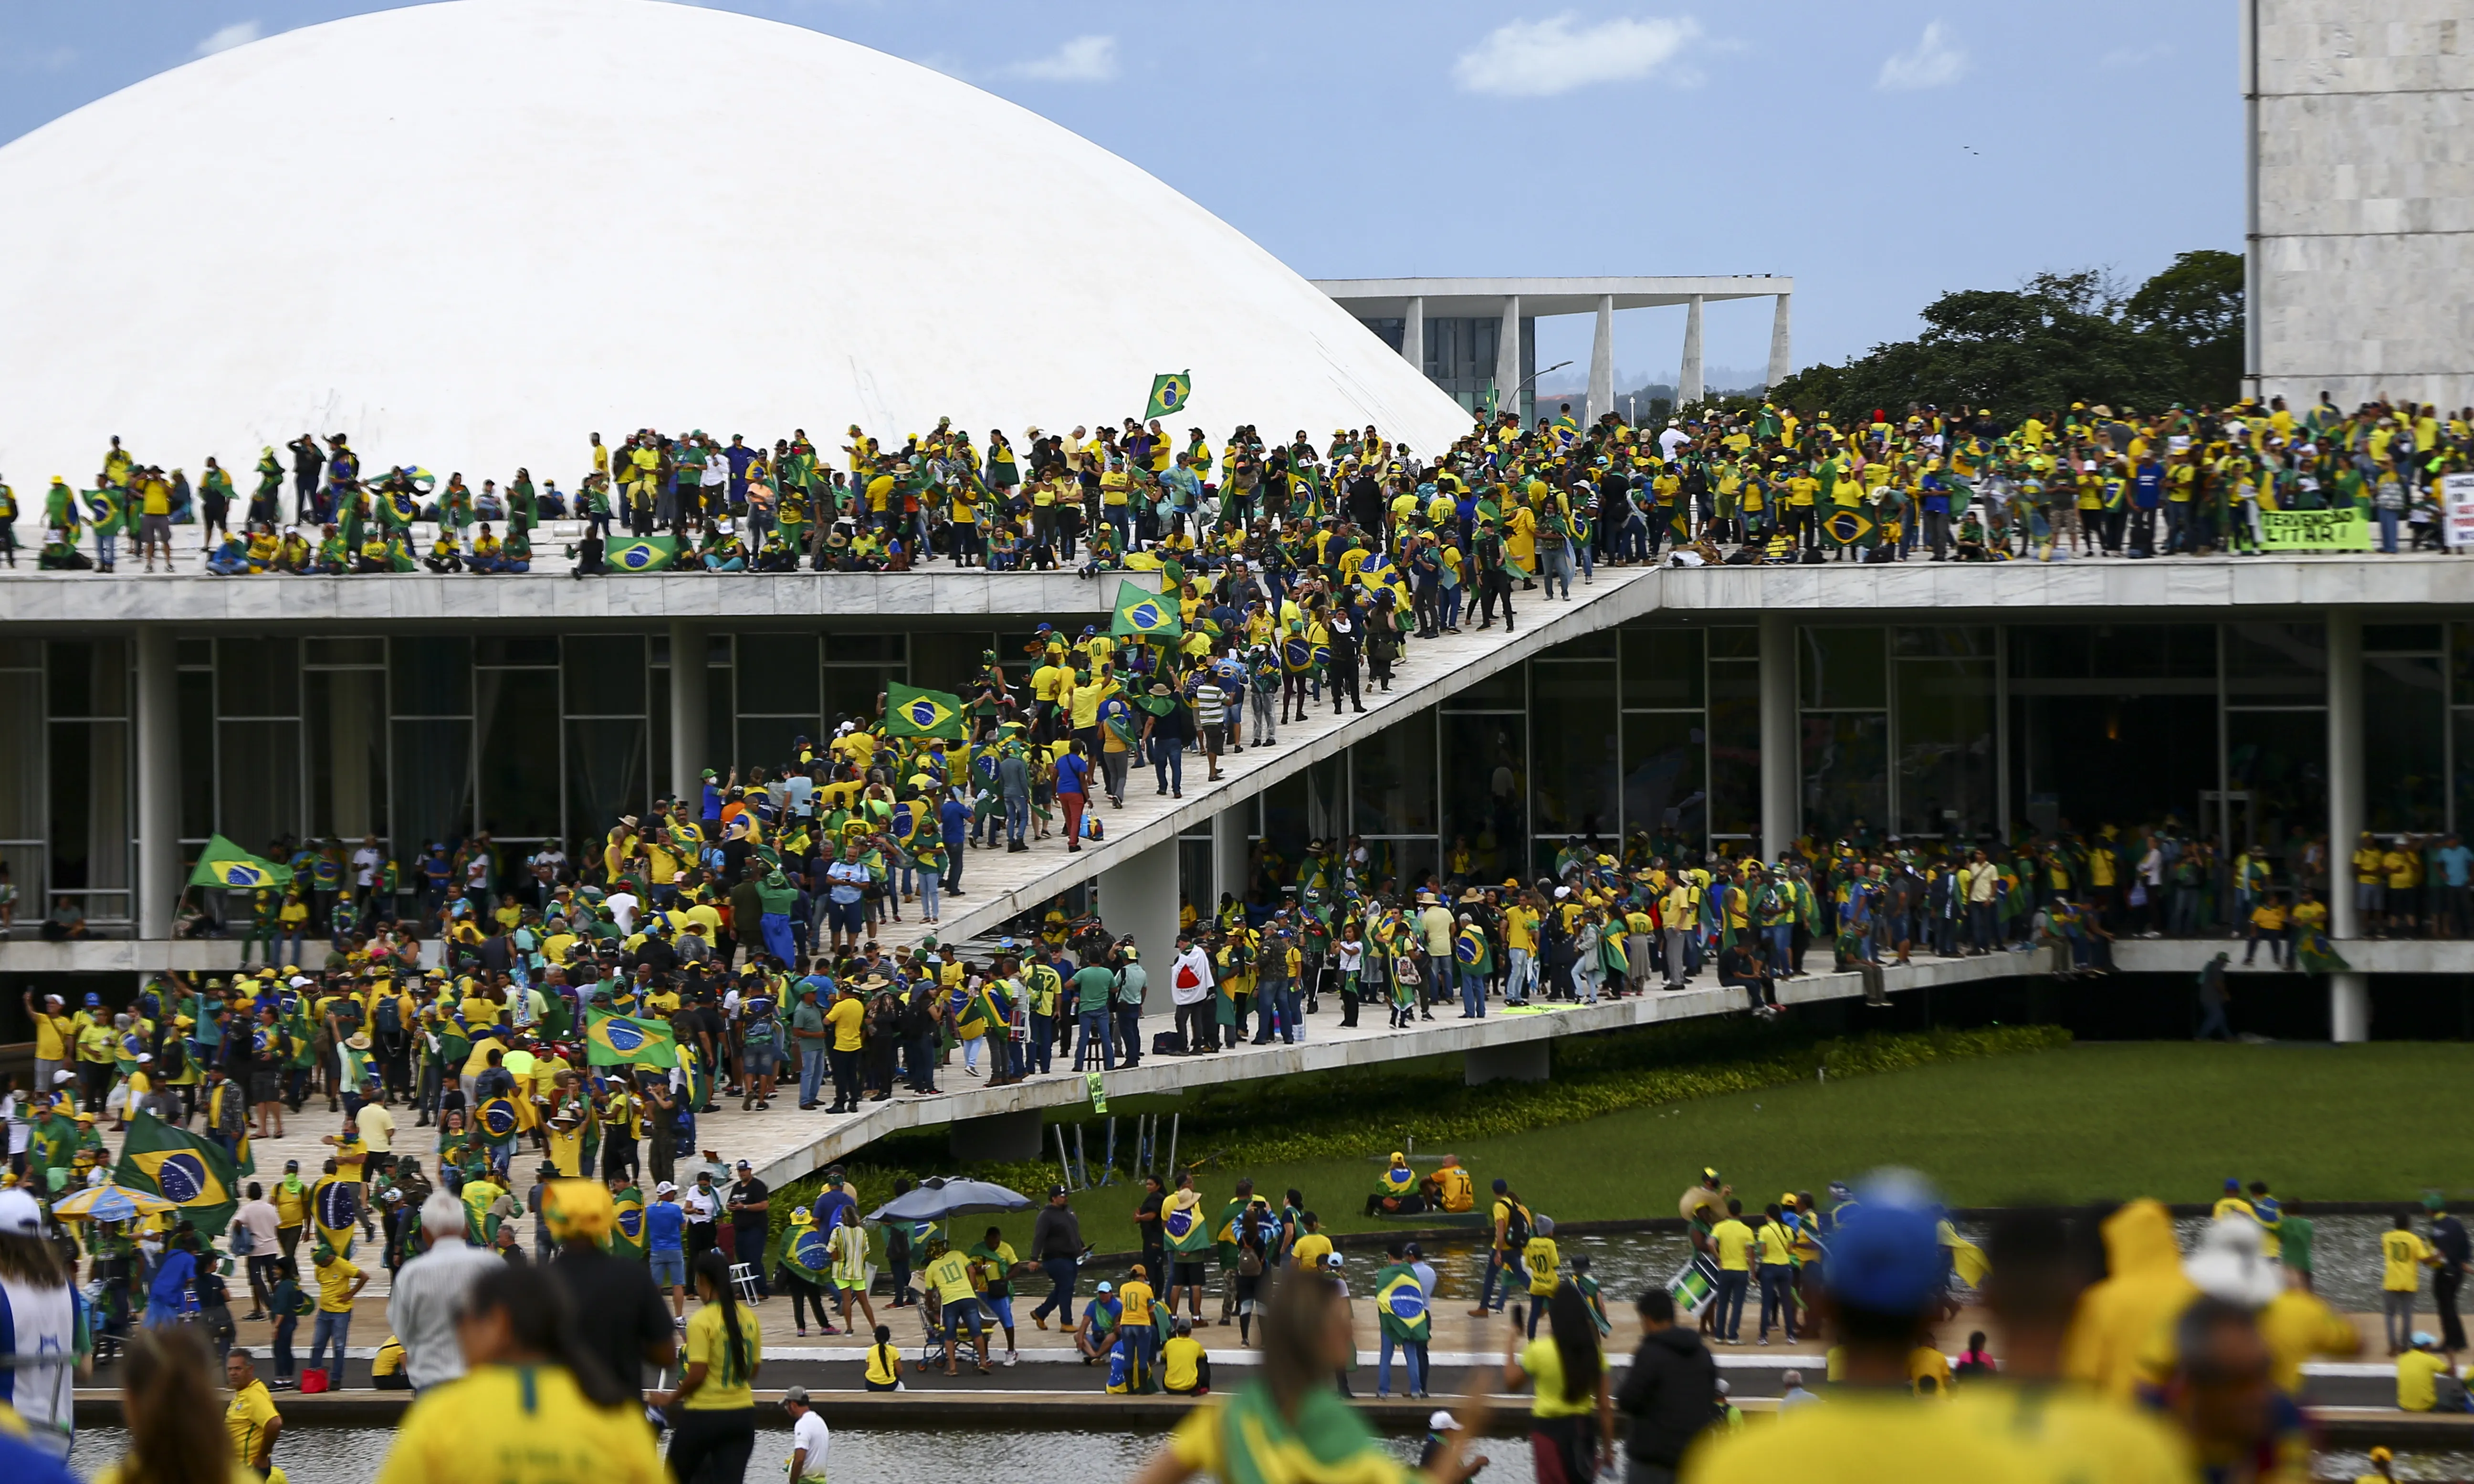 L'assalt a les seus del poder institucional del Brasil ha acabat amb més d'un miler i mig de detinguts.